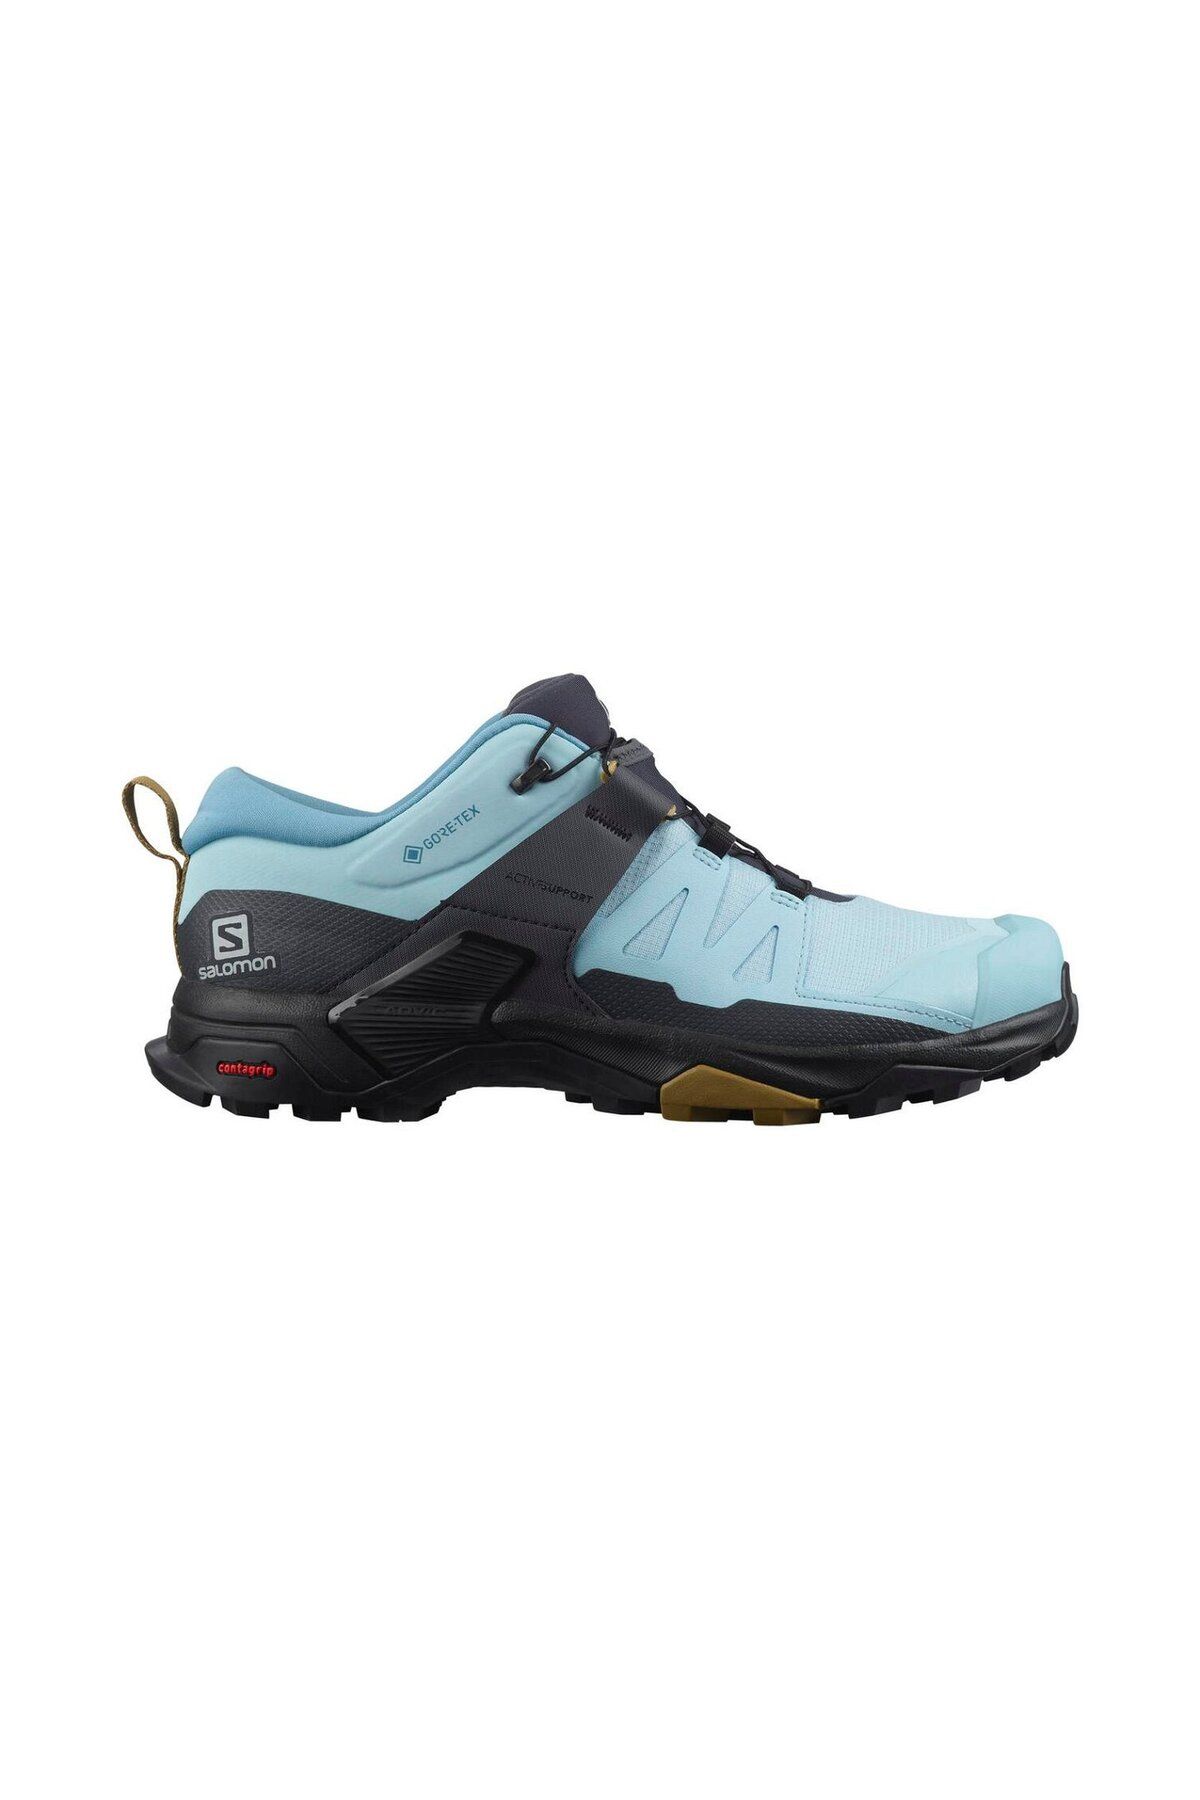 Salomon X Ultra 4 Gtx W Kadın Mavi Outdoor Ayakkabı L41452900-25373